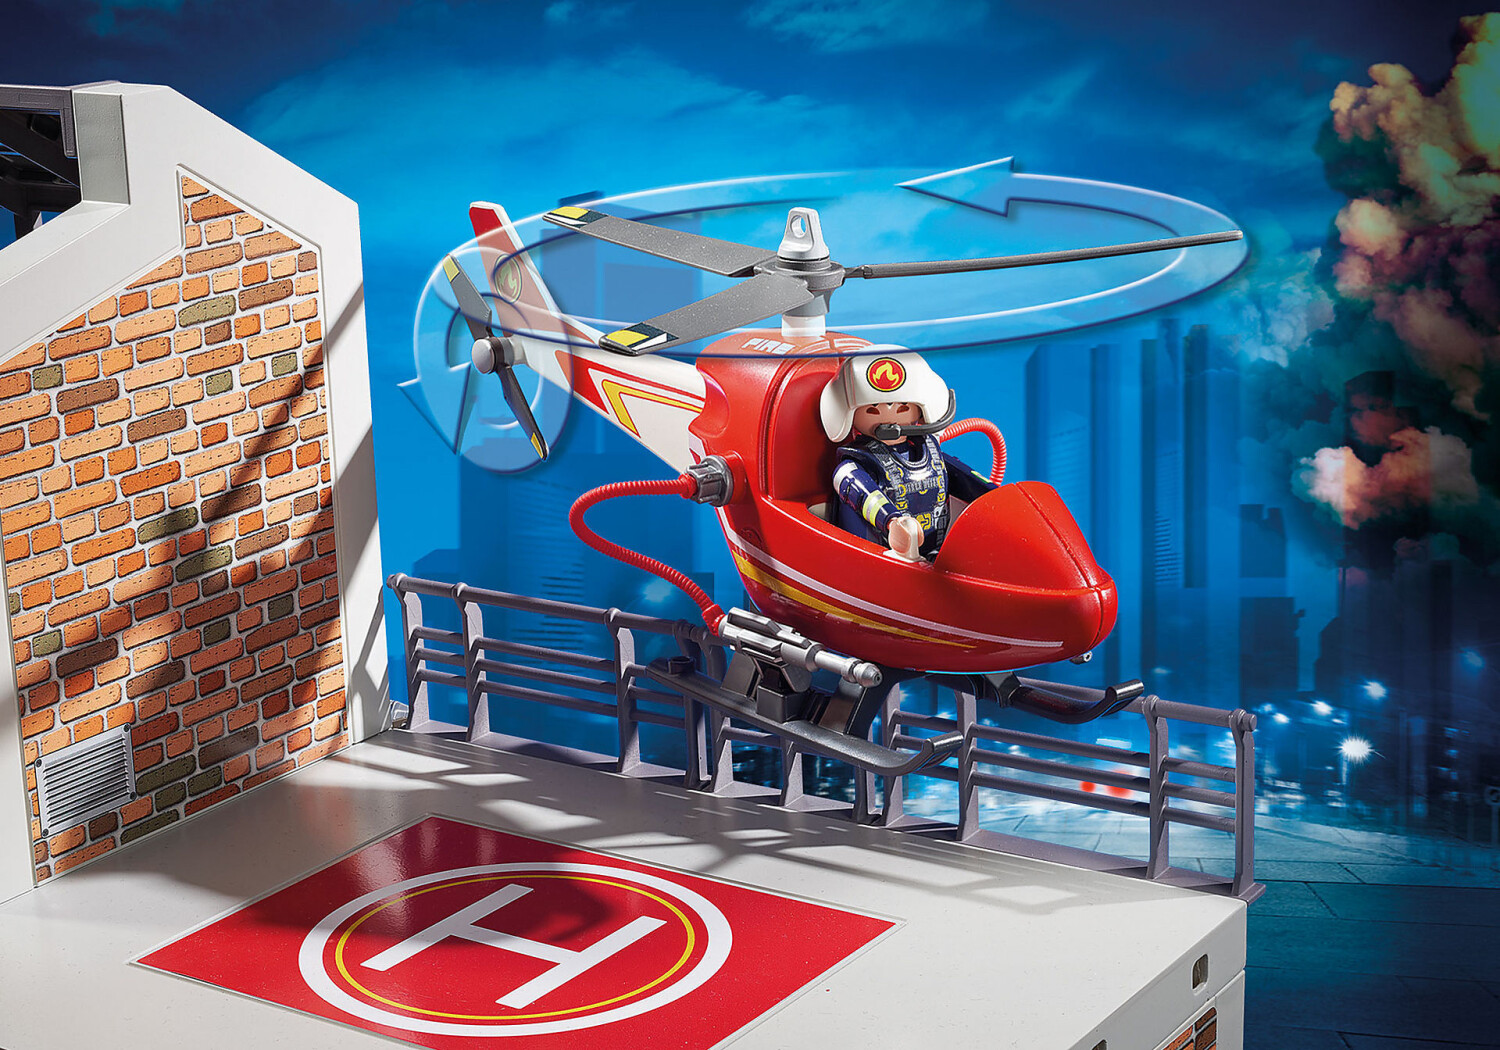 Playmobil 1.2.3 - Pompier avec hélicoptère PLAYMOBIL : Comparateur, Avis,  Prix